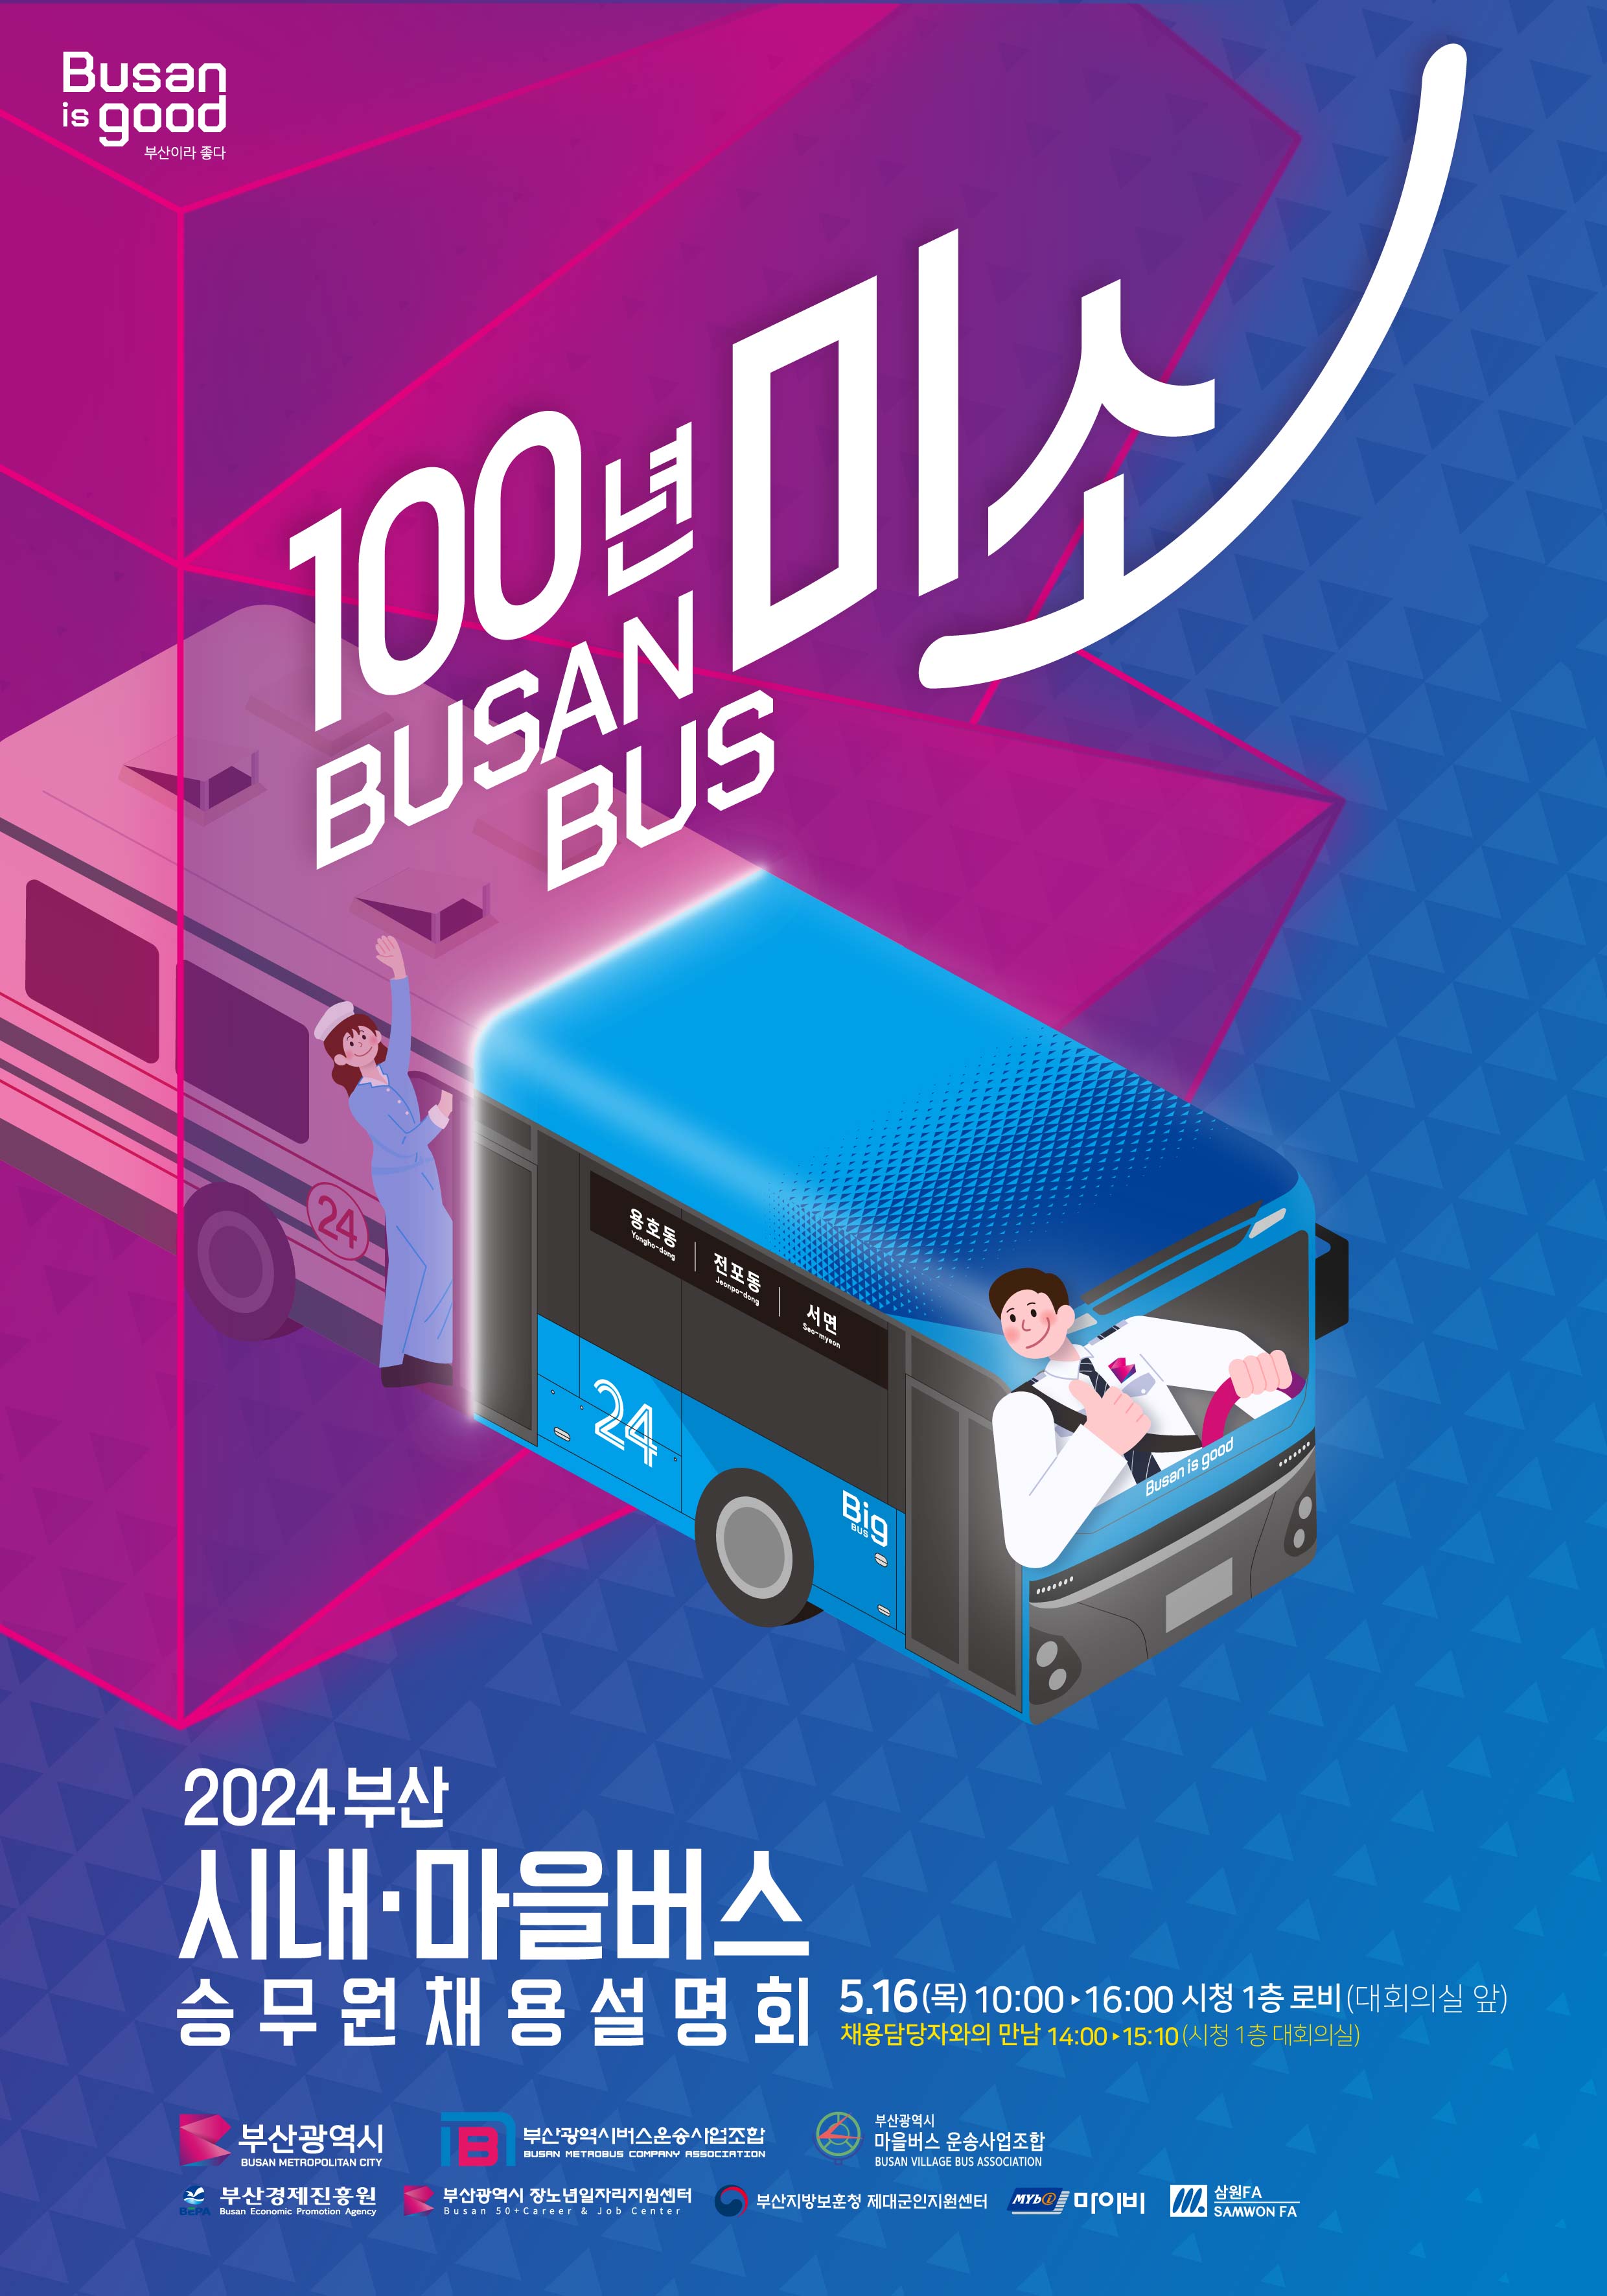 「100년 미소 BUSAN BUS, 2024 승무원 채용박람회」 개최